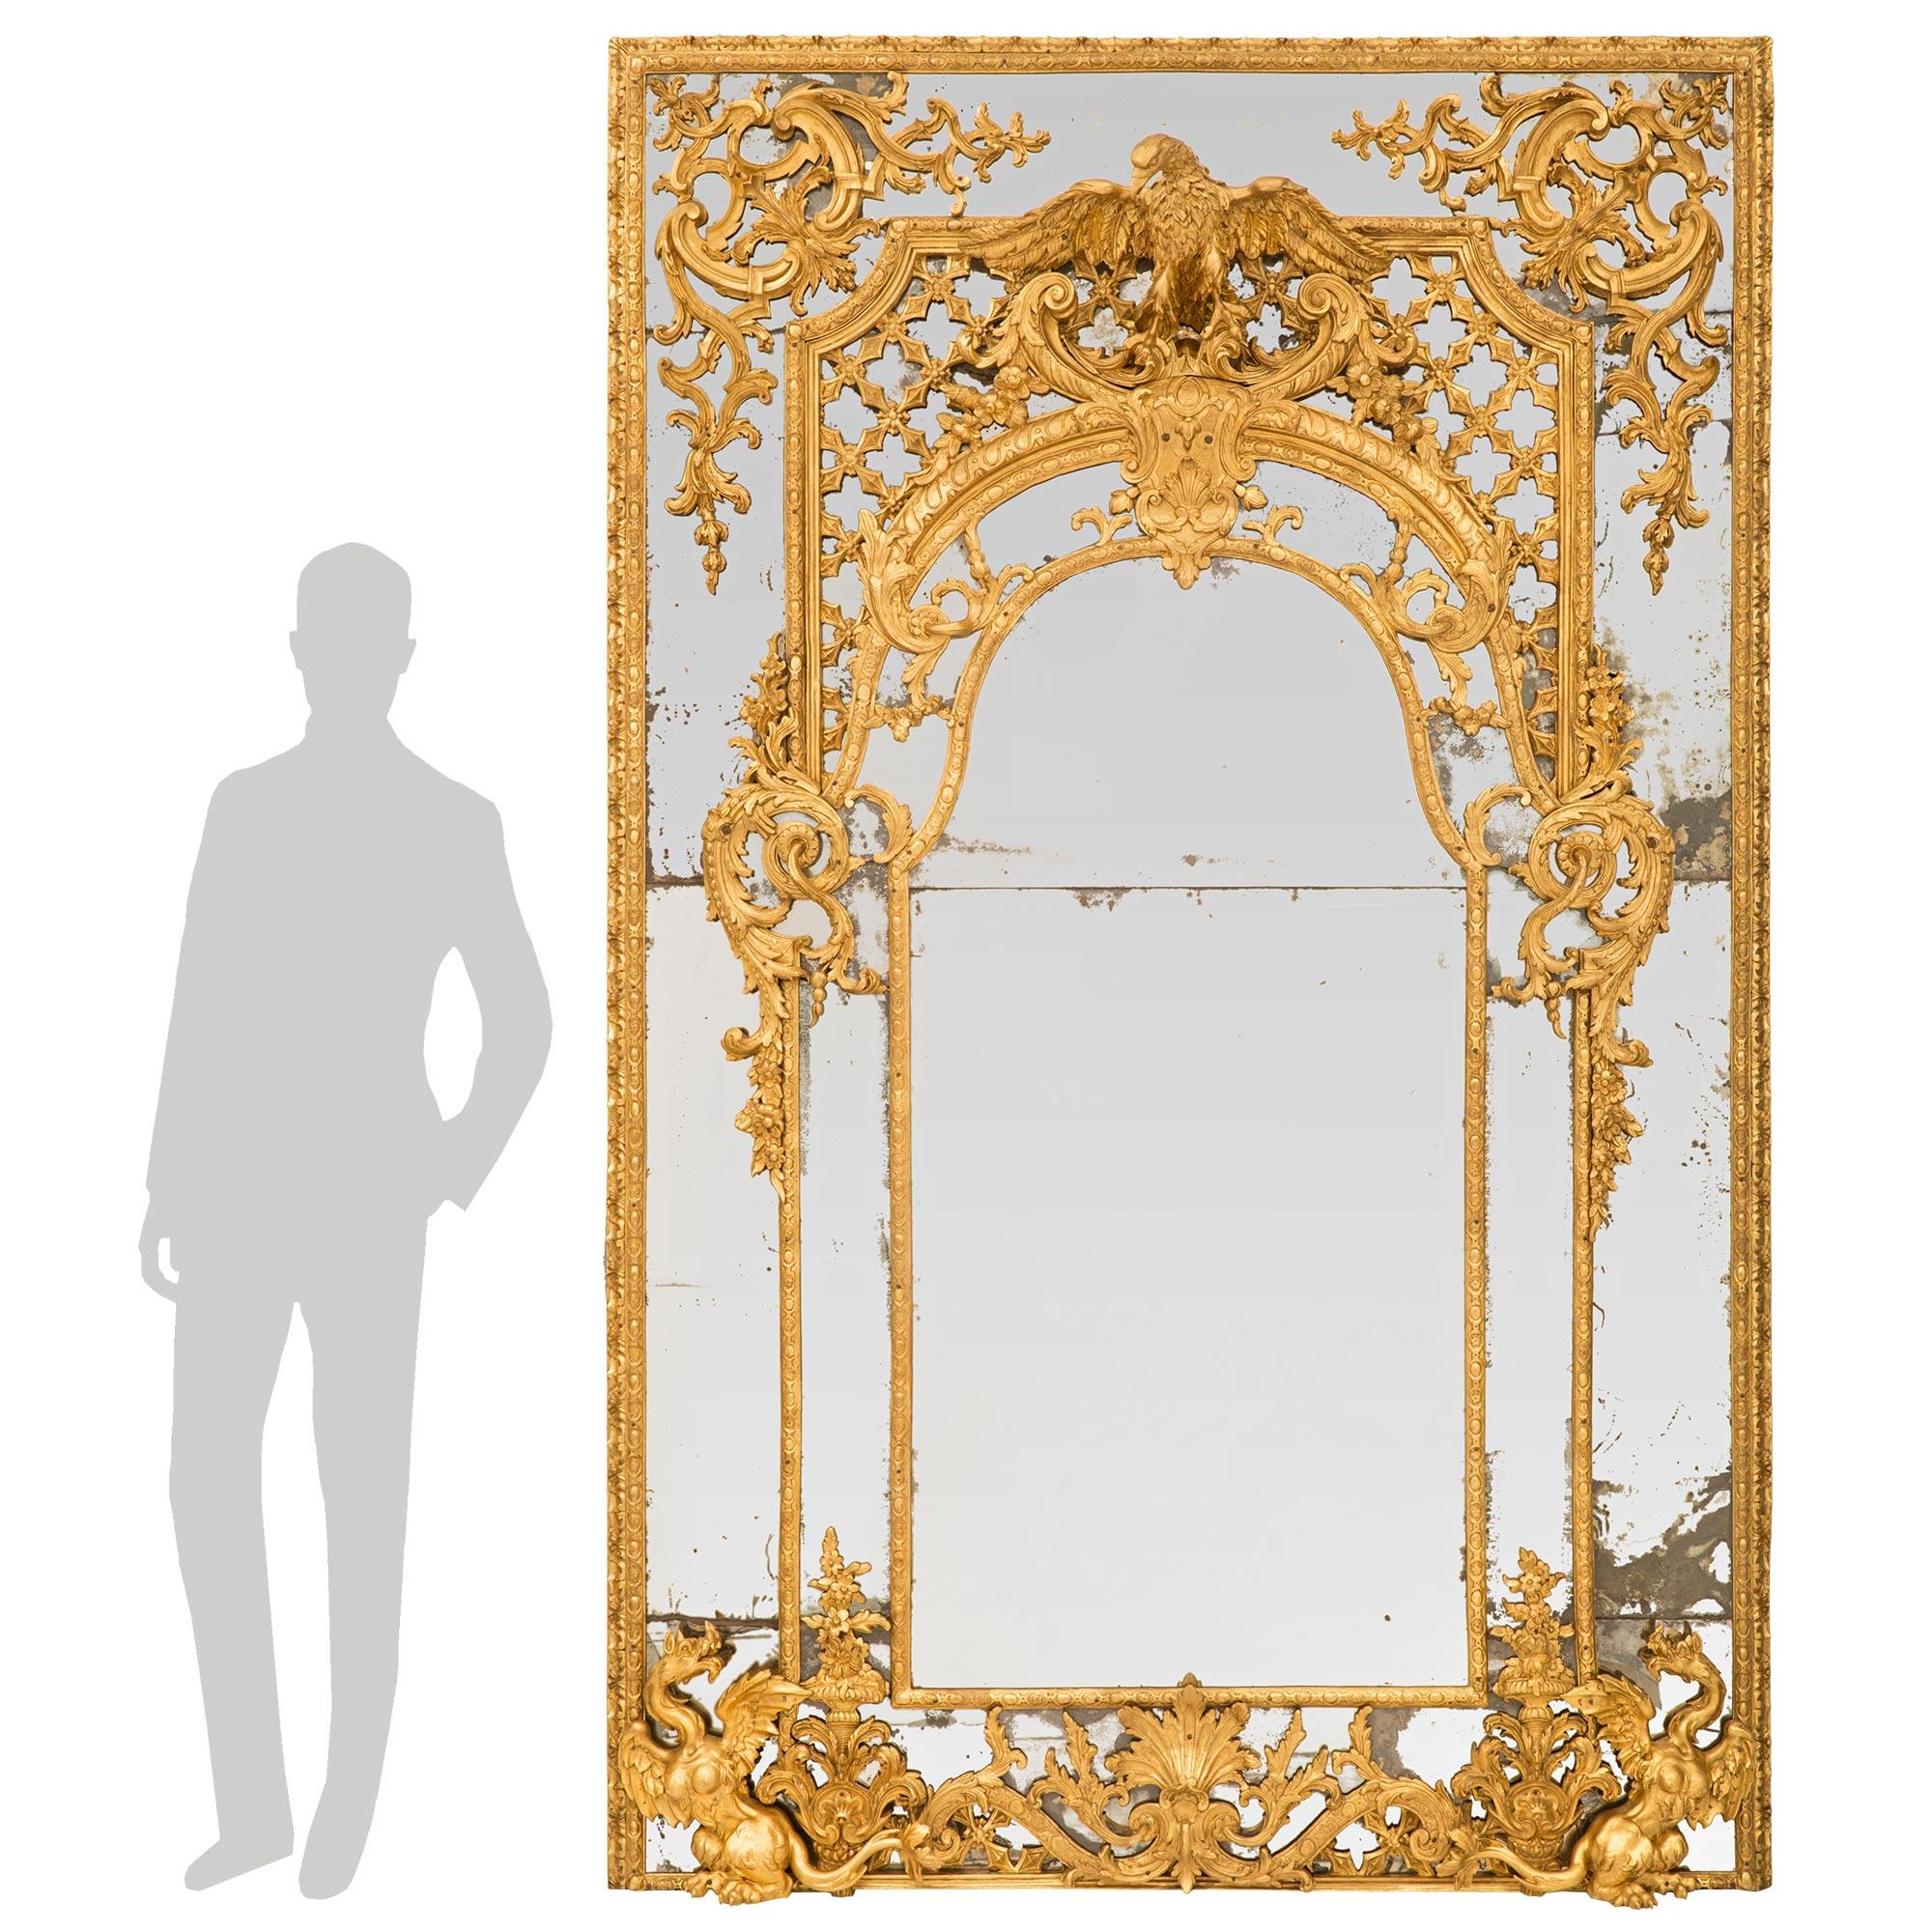 Rare miroir en bois doré à double encadrement d'époque Louis XIV, provenant du célèbre Palais Borghese, d'une qualité exceptionnelle, datant de la fin du XVIIe siècle ou du début du XVIIIe siècle. Ce miroir de grande taille a conservé toutes ses